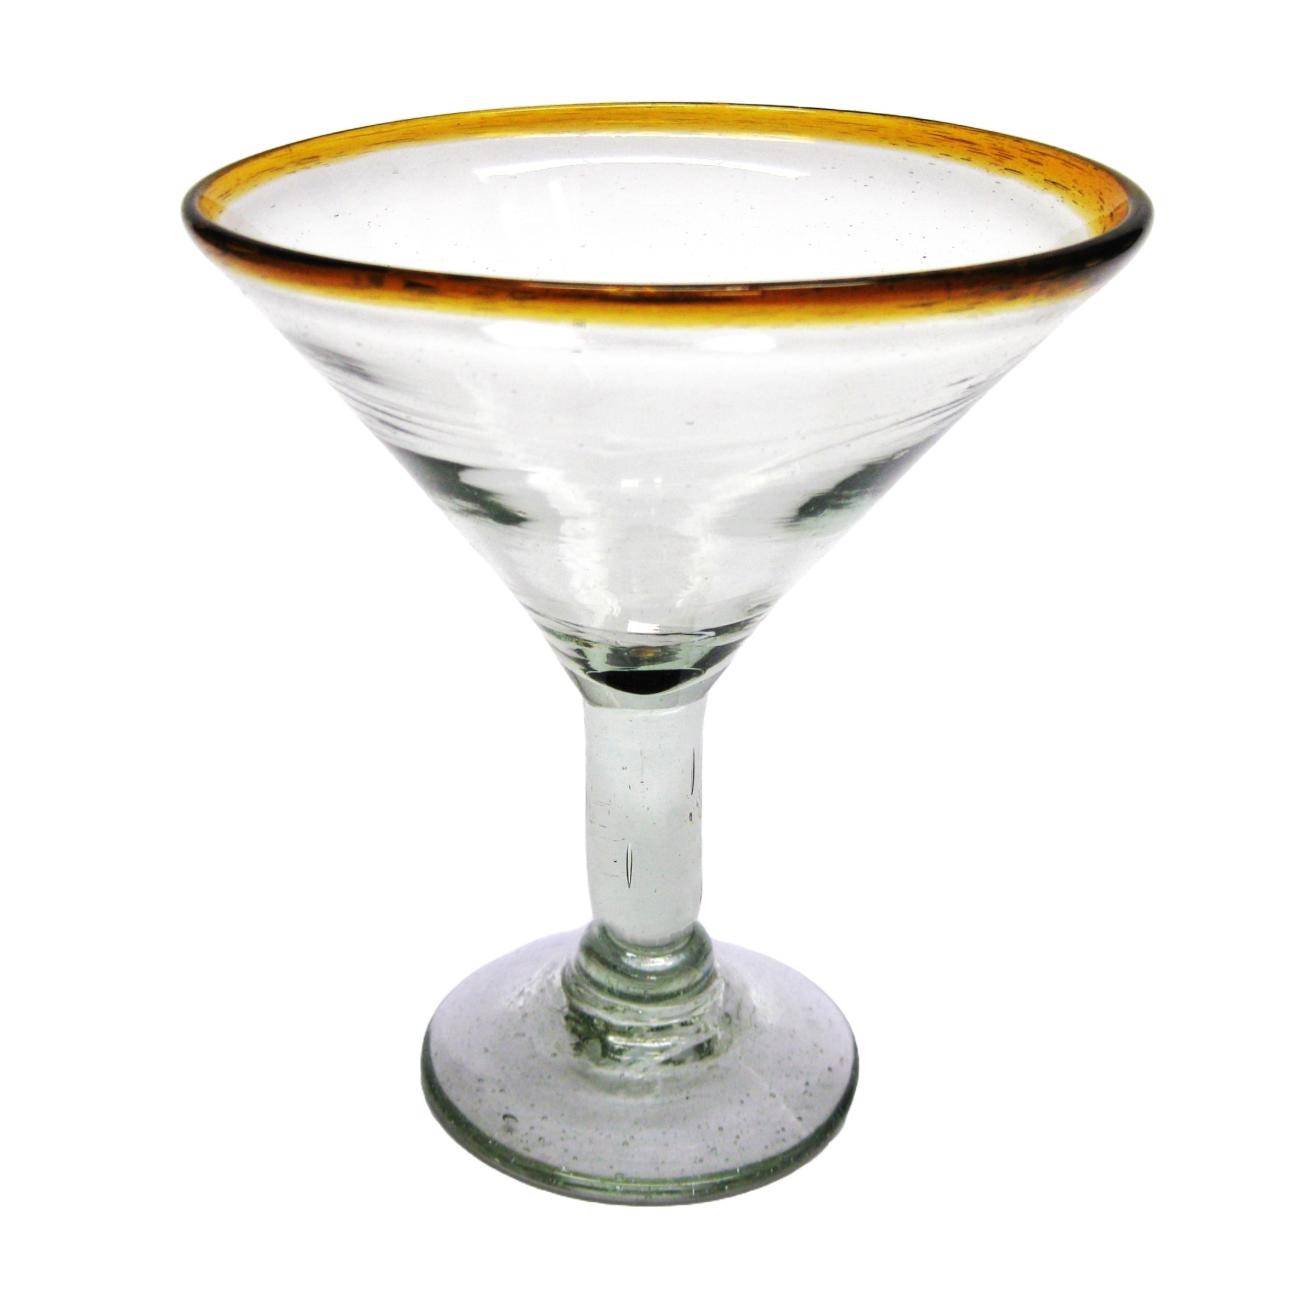 Borde Color Ambar / Juego de 6 copas para martini con borde color mbar / ste hermoso juego de copas para martini le dar un toque clsico mexicano a sus fiestas.